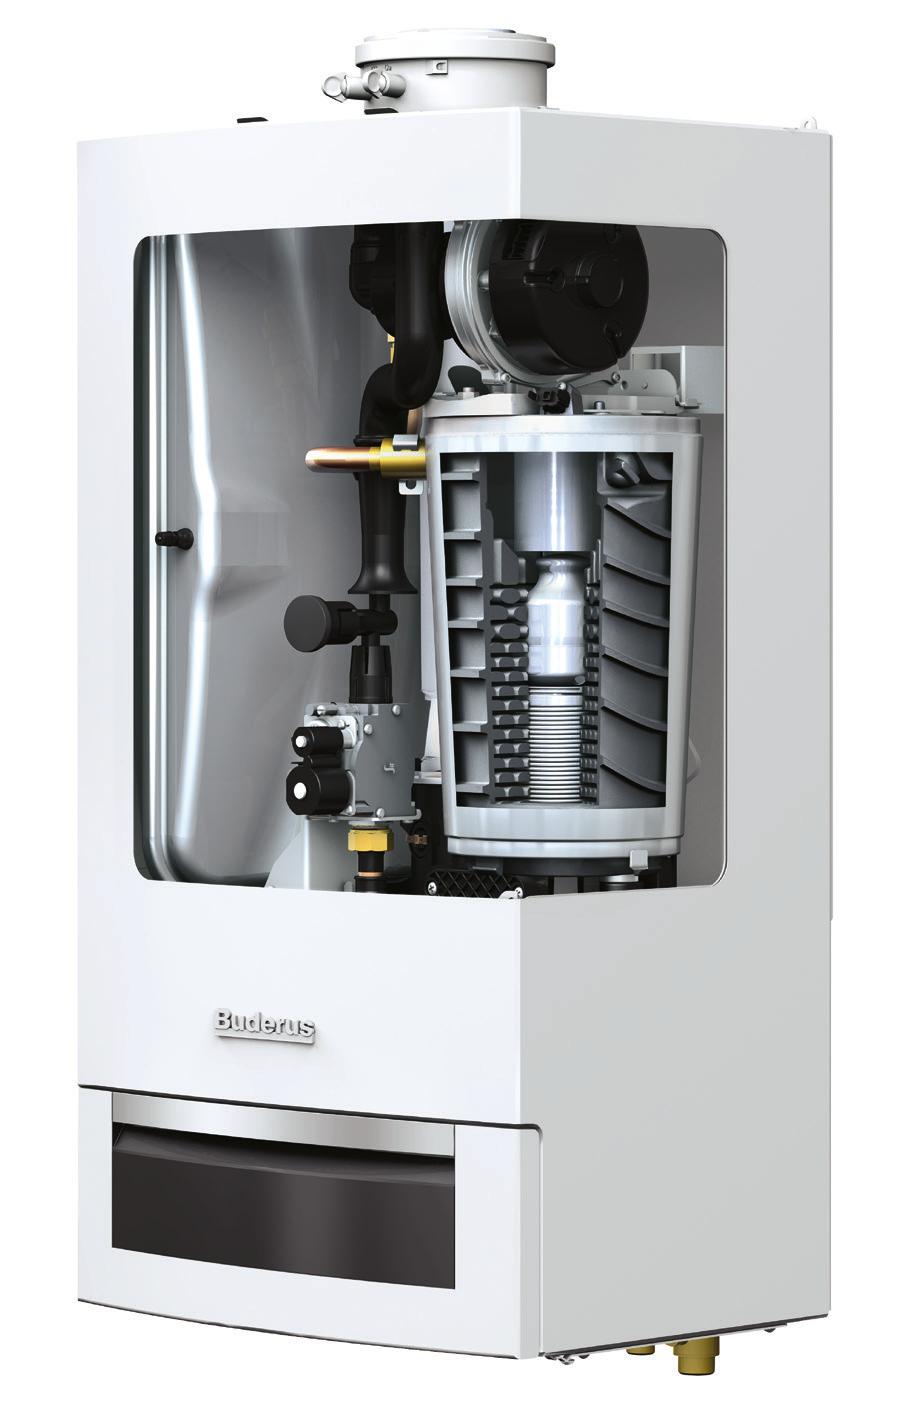 Solide und robust: Logamax GB172 Brennwerttechnik von Buderus hat sich millionenfach bewährt, sodass Sie beim Logamax plus GB172 auf überzeugende Lösungen vertrauen können.